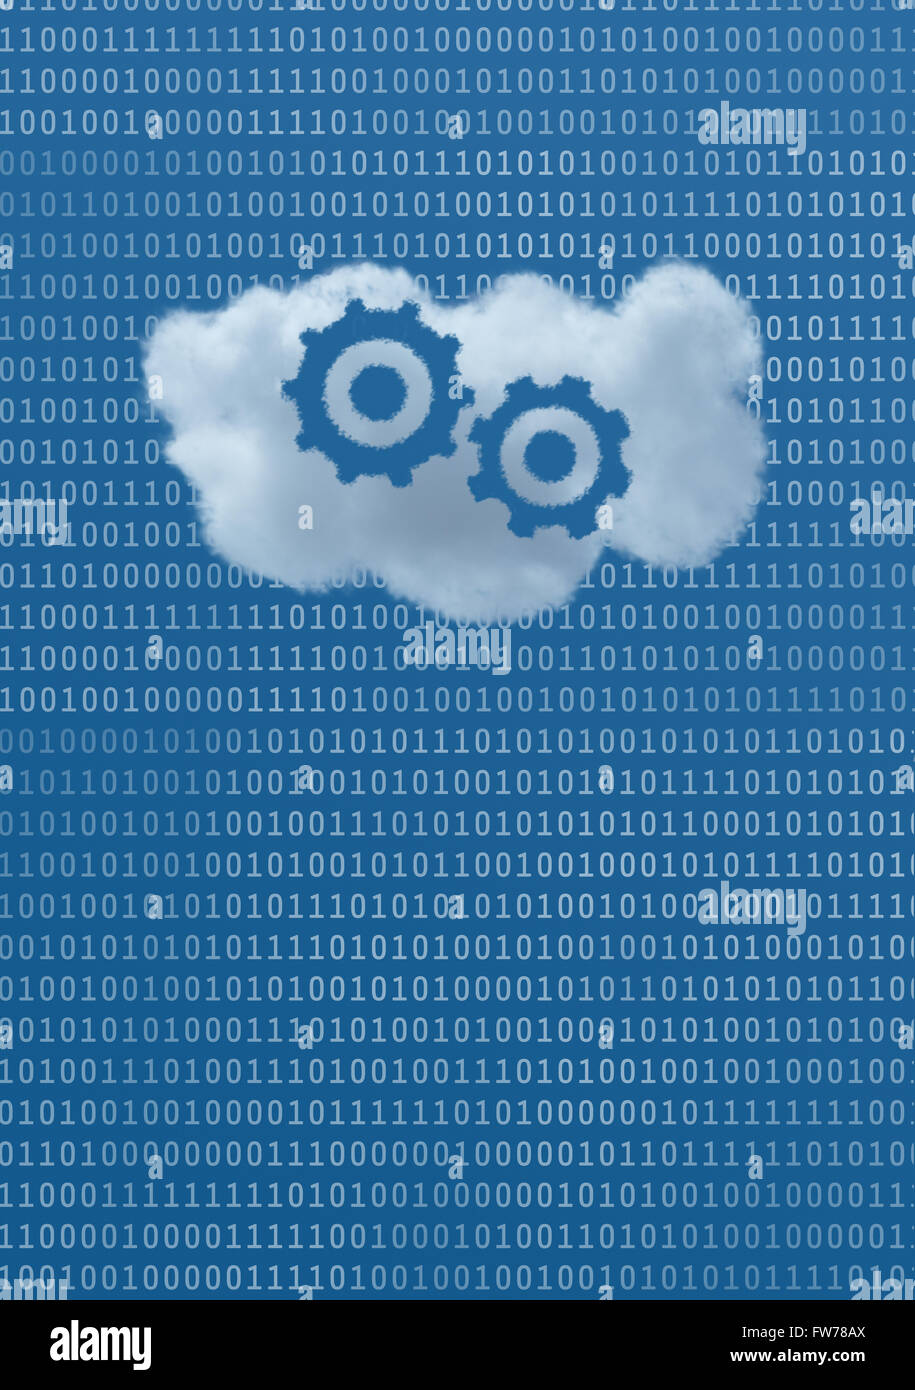 Zahnräder sind in einer Wolke inmitten eines blauen Himmels, gefüllt mit Binärdaten, die Idee des Cloud-Apps und Cloud-Services zu sehen. Stockfoto